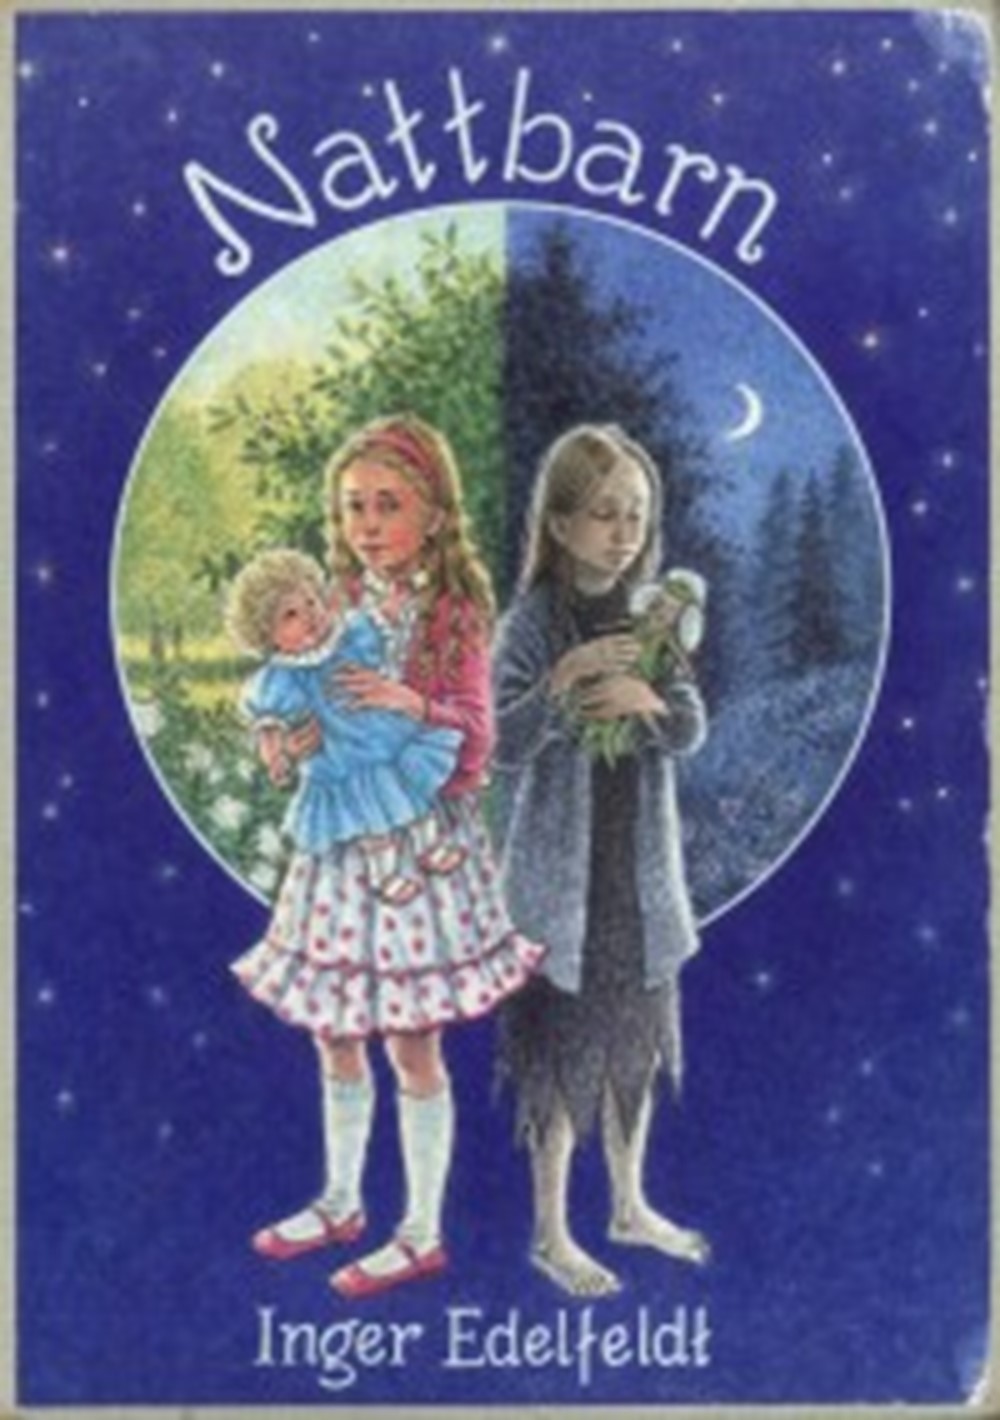 Omslaget till boken "Nattbarn".